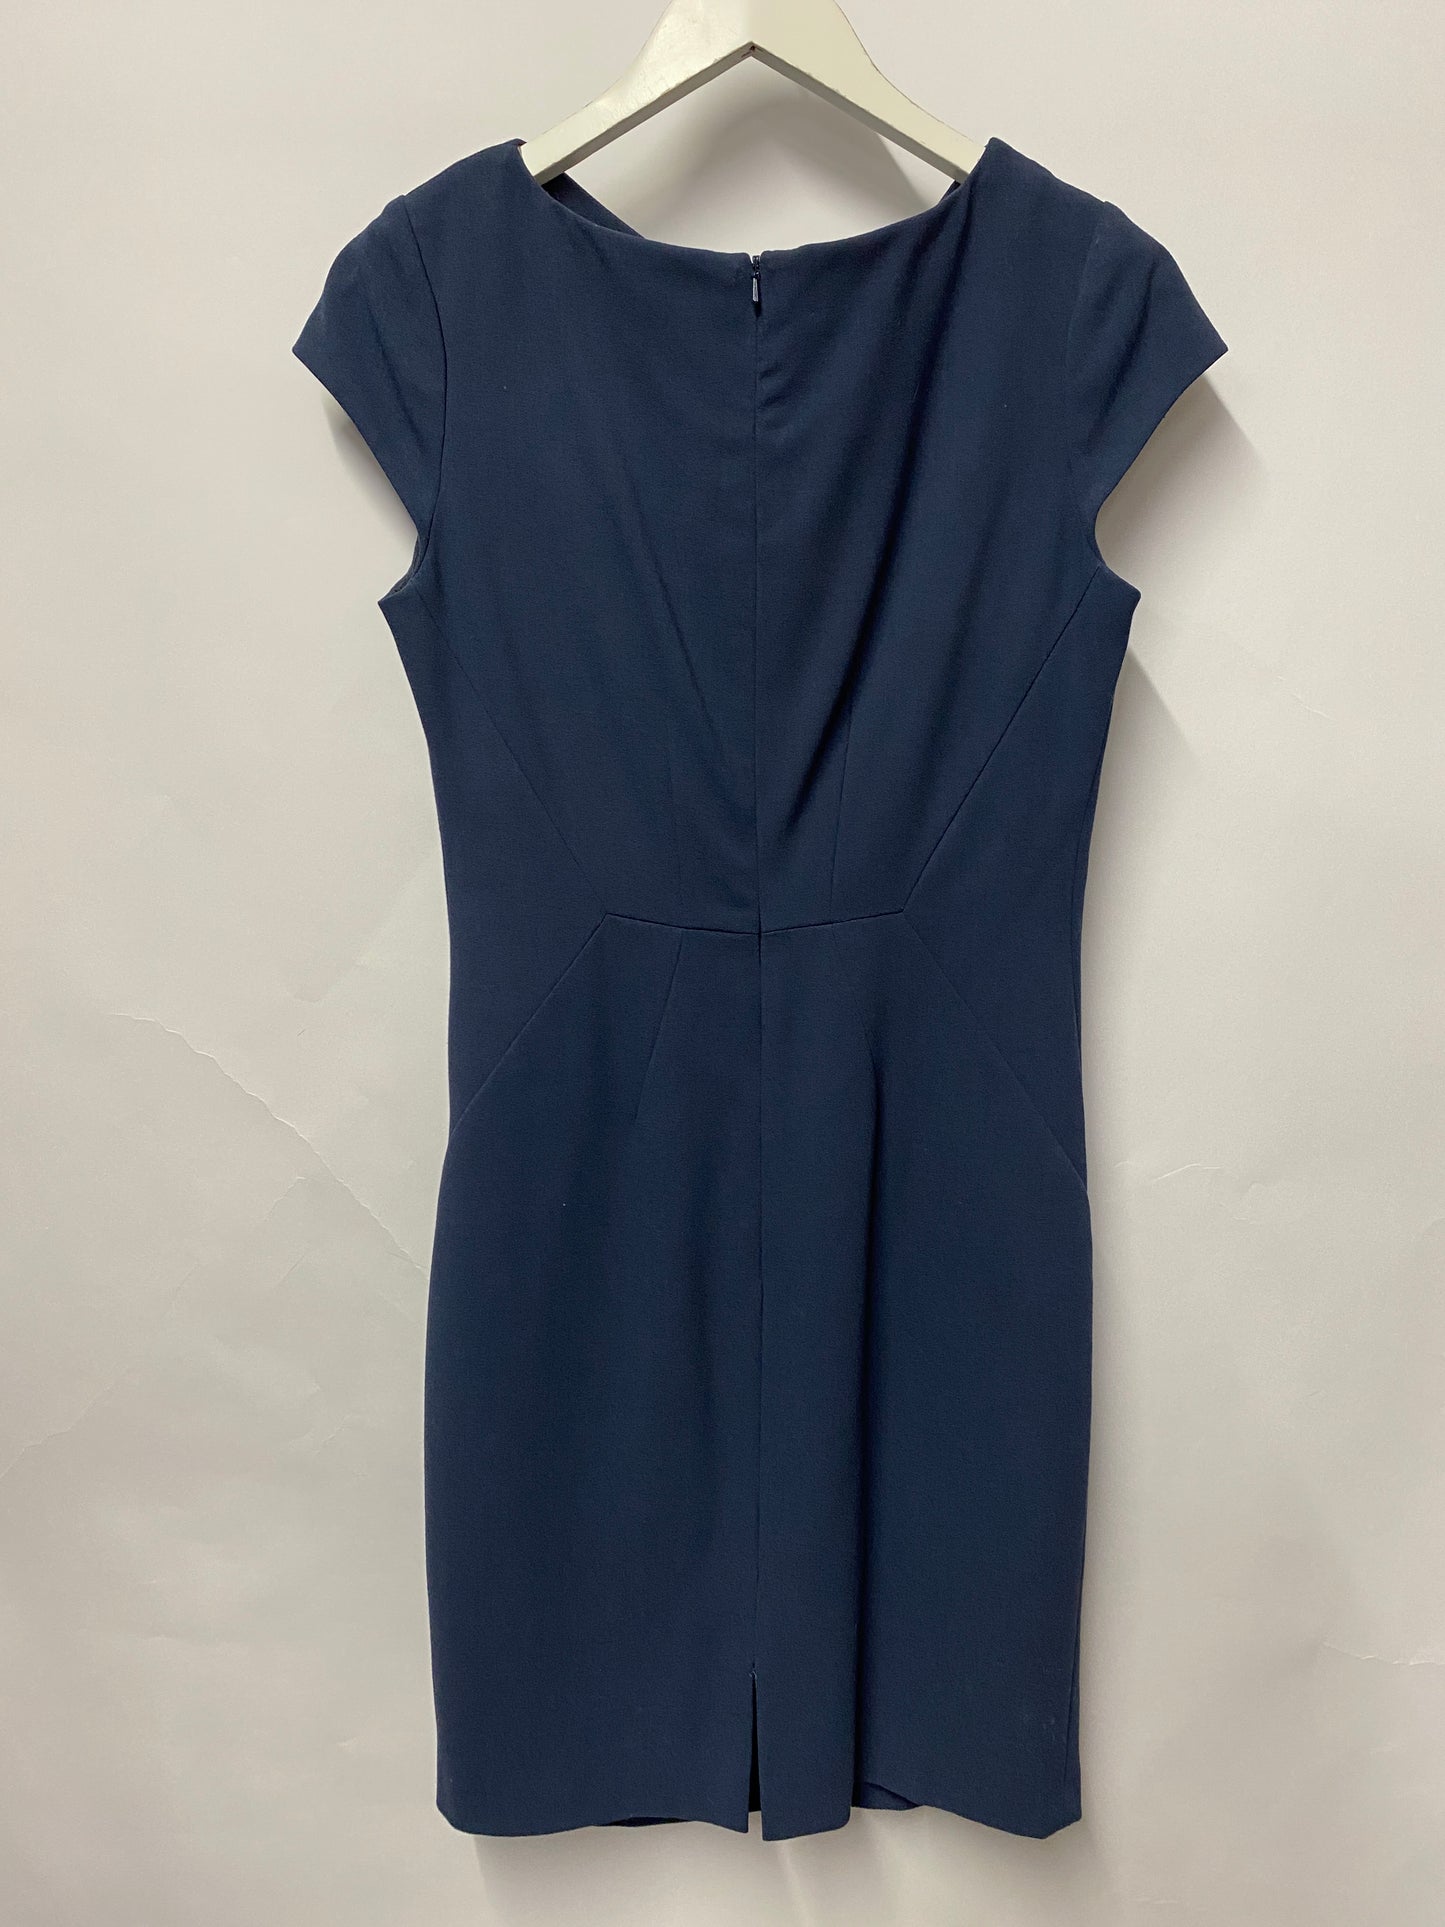 L.K.Bennett Blue Smart Work Dress Mid Length 12